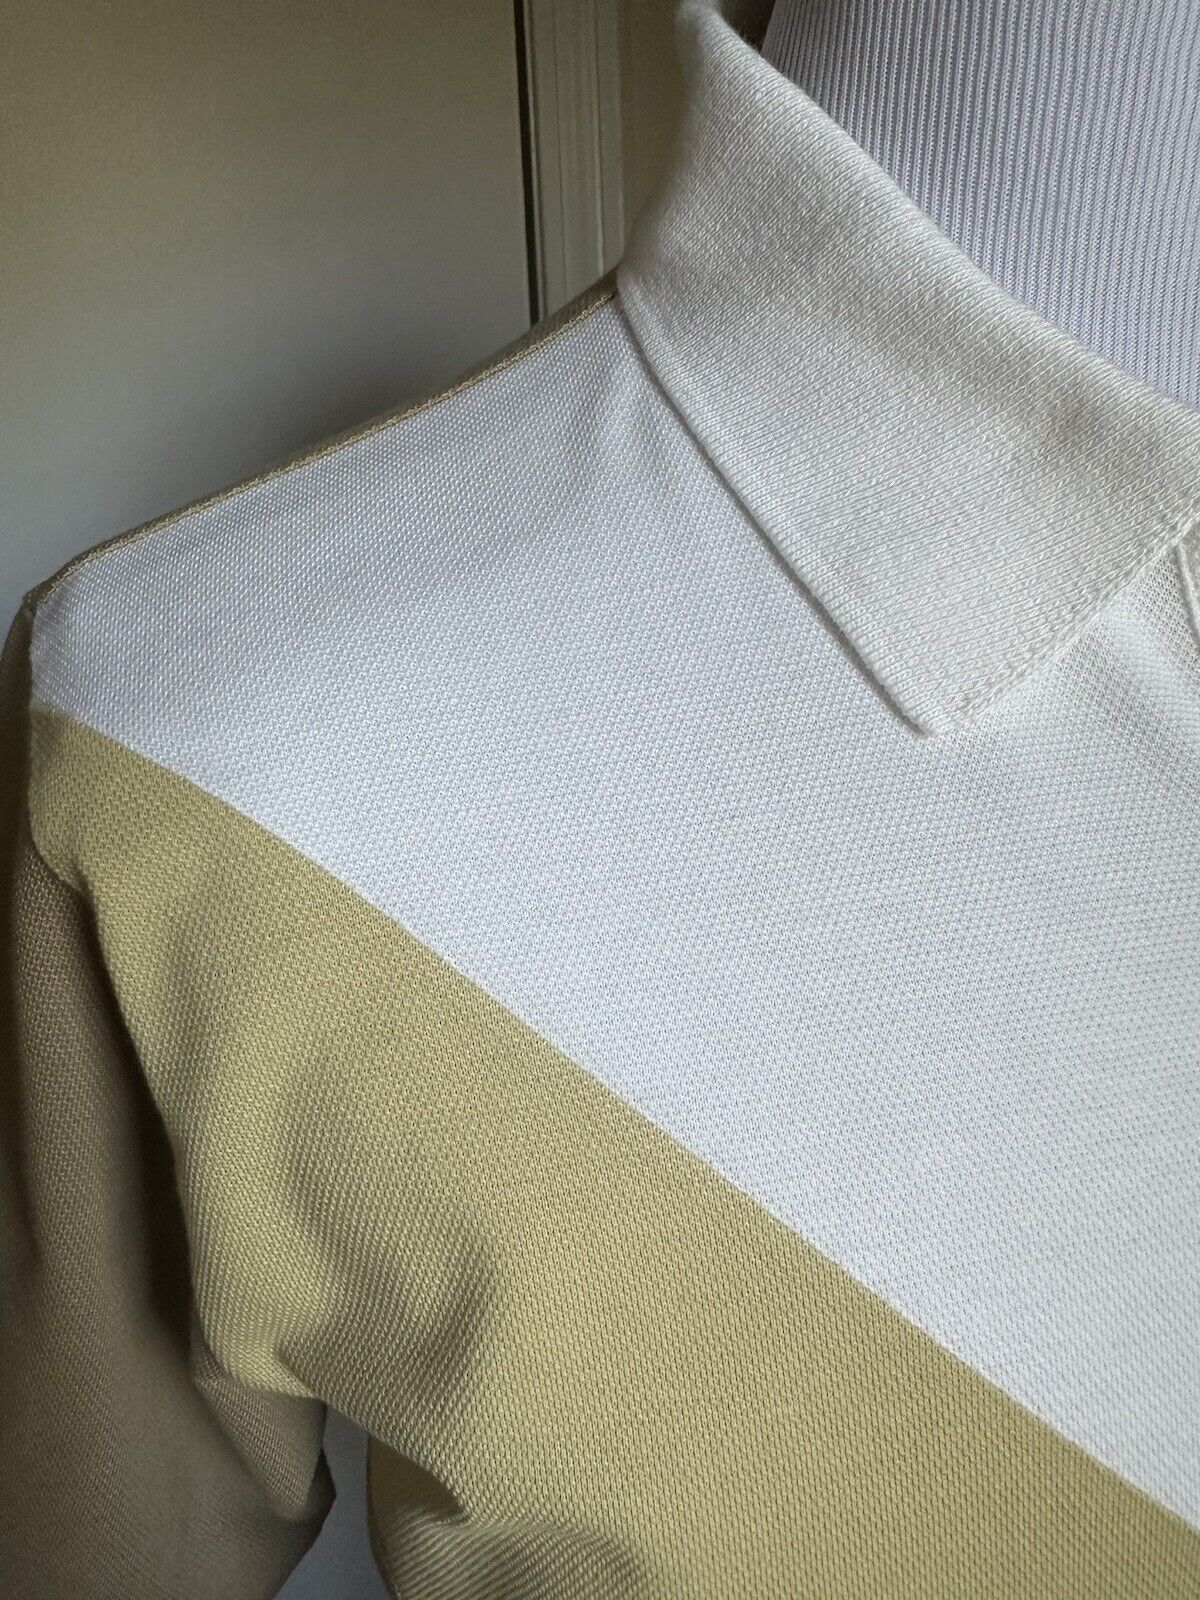 Bottega Veneta Men Cotton Piquet Polo Shirt White/Yellow/Brown Size M New $700